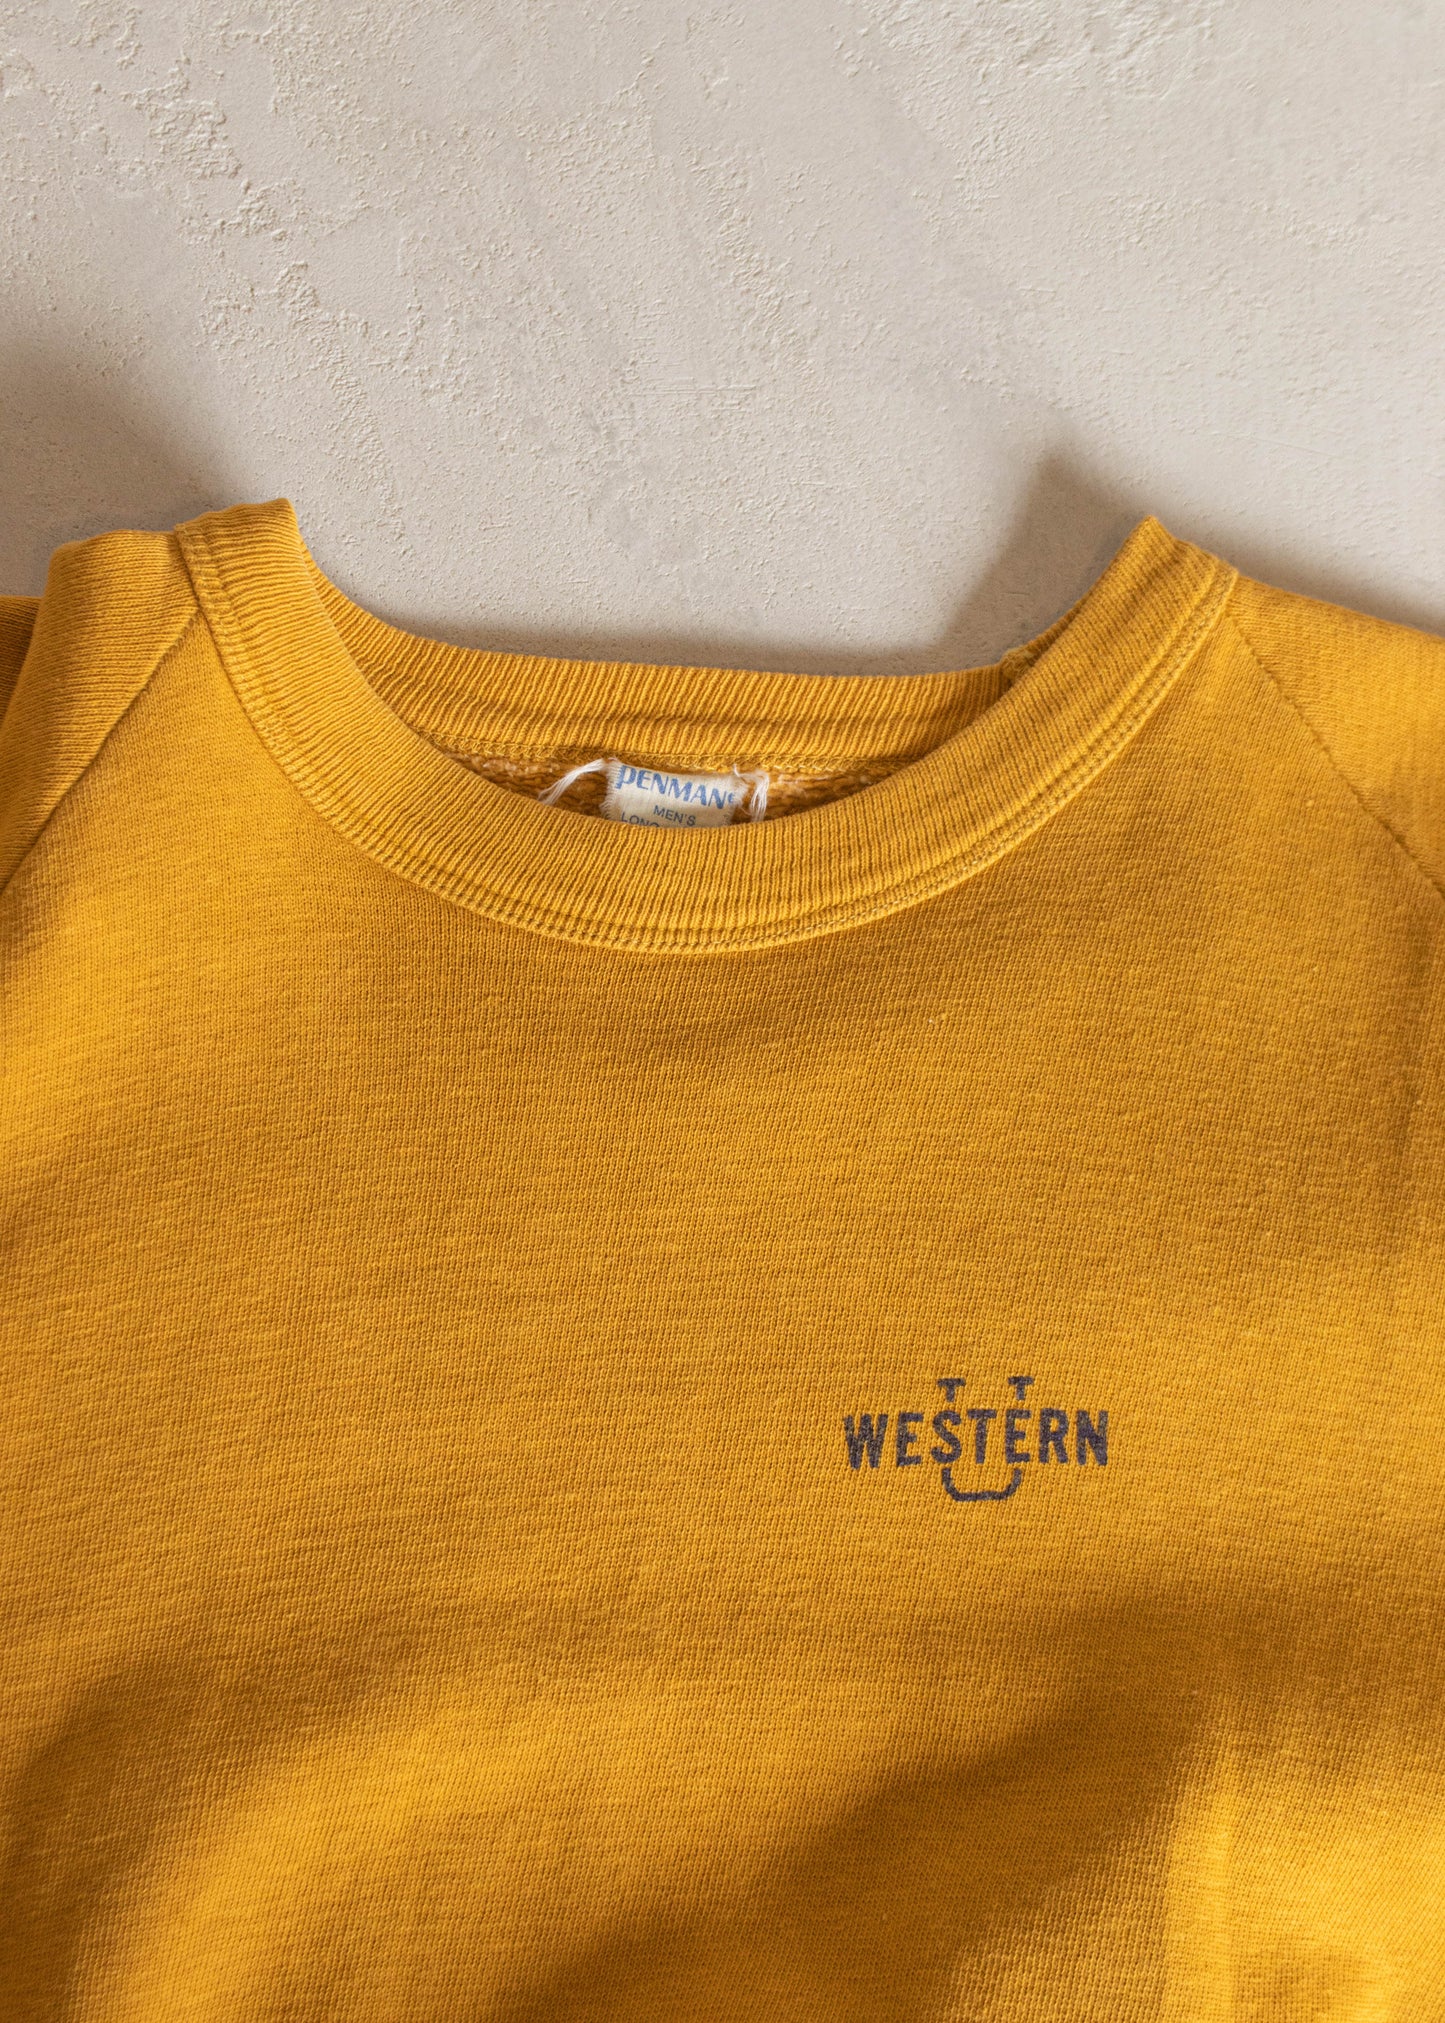 1960s Penmans Western University Raglan Sweatshirt Size XS/S